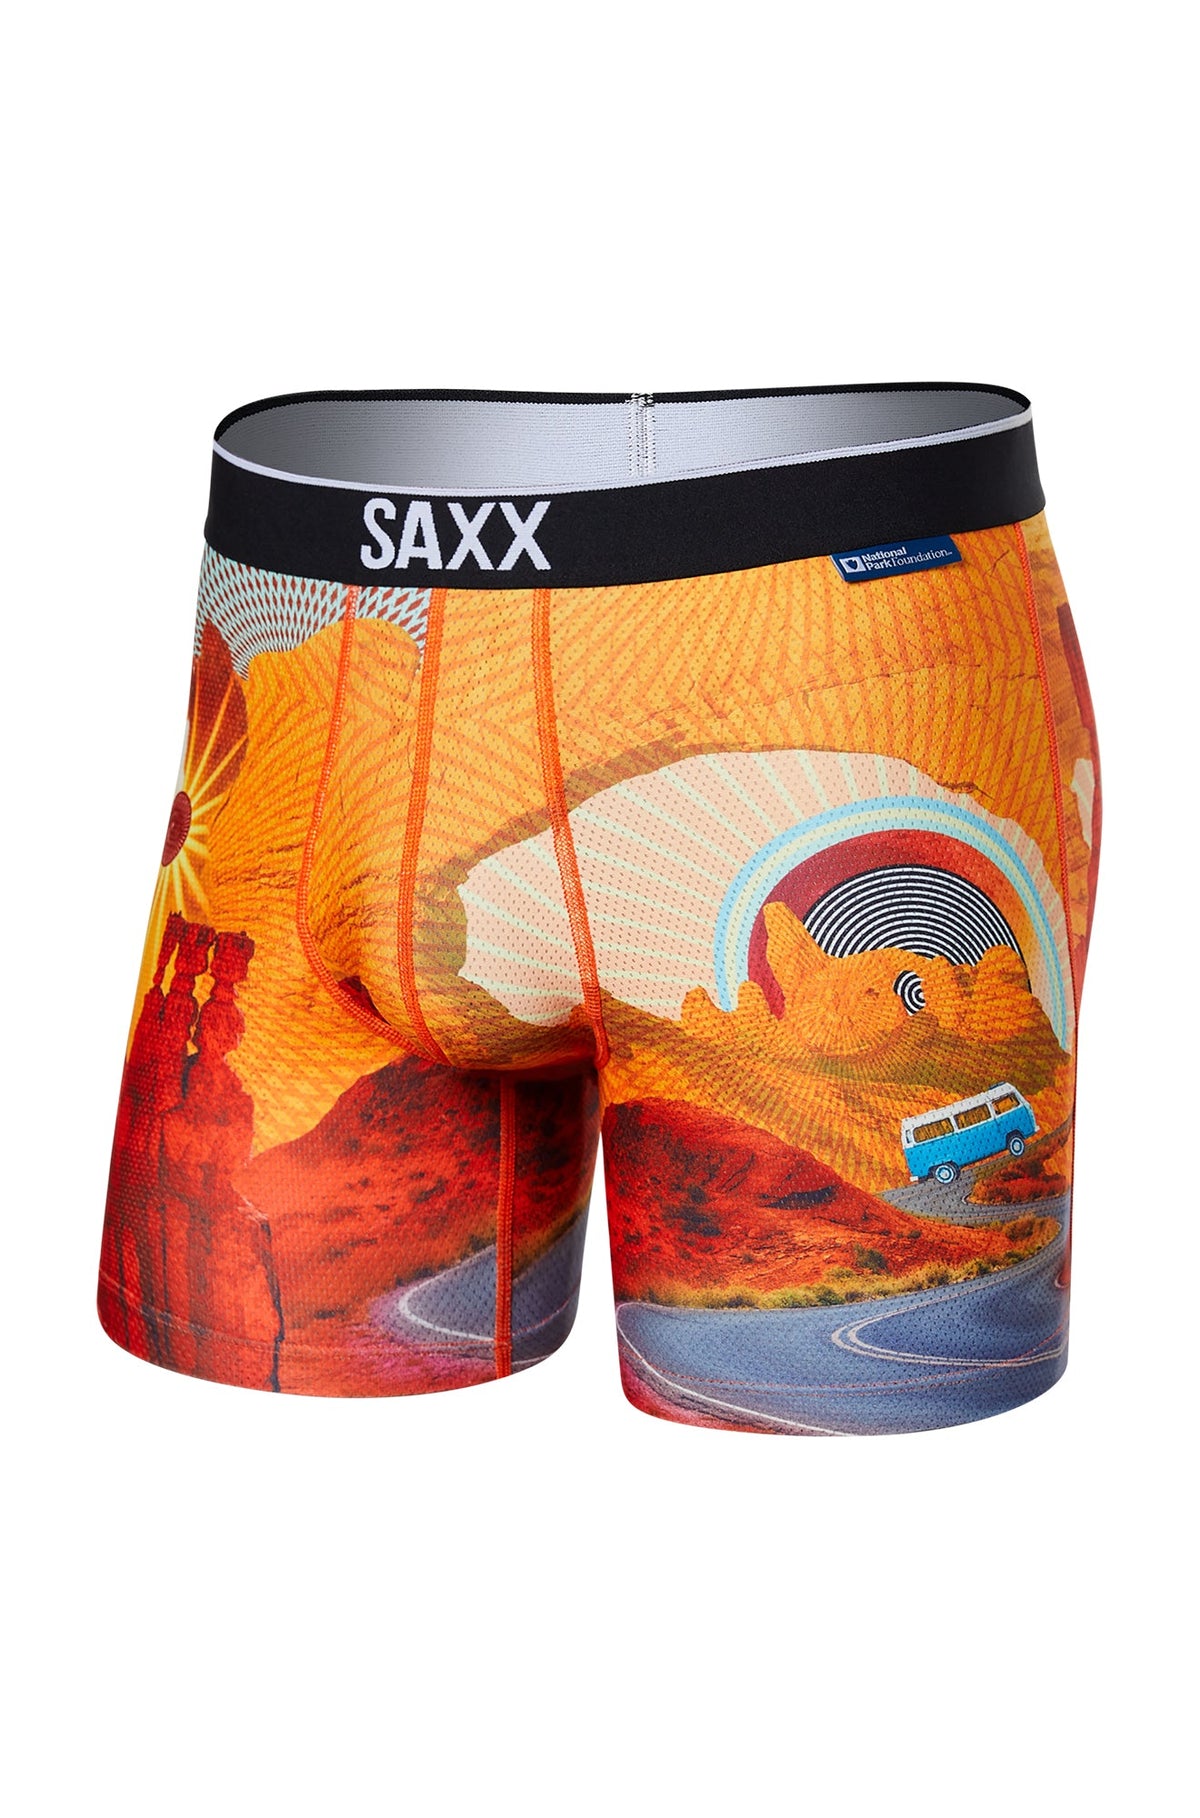 Boxer pour homme par Saxx | Volt SXBB29 OUL | Machemise.ca, vêtements mode pour hommes